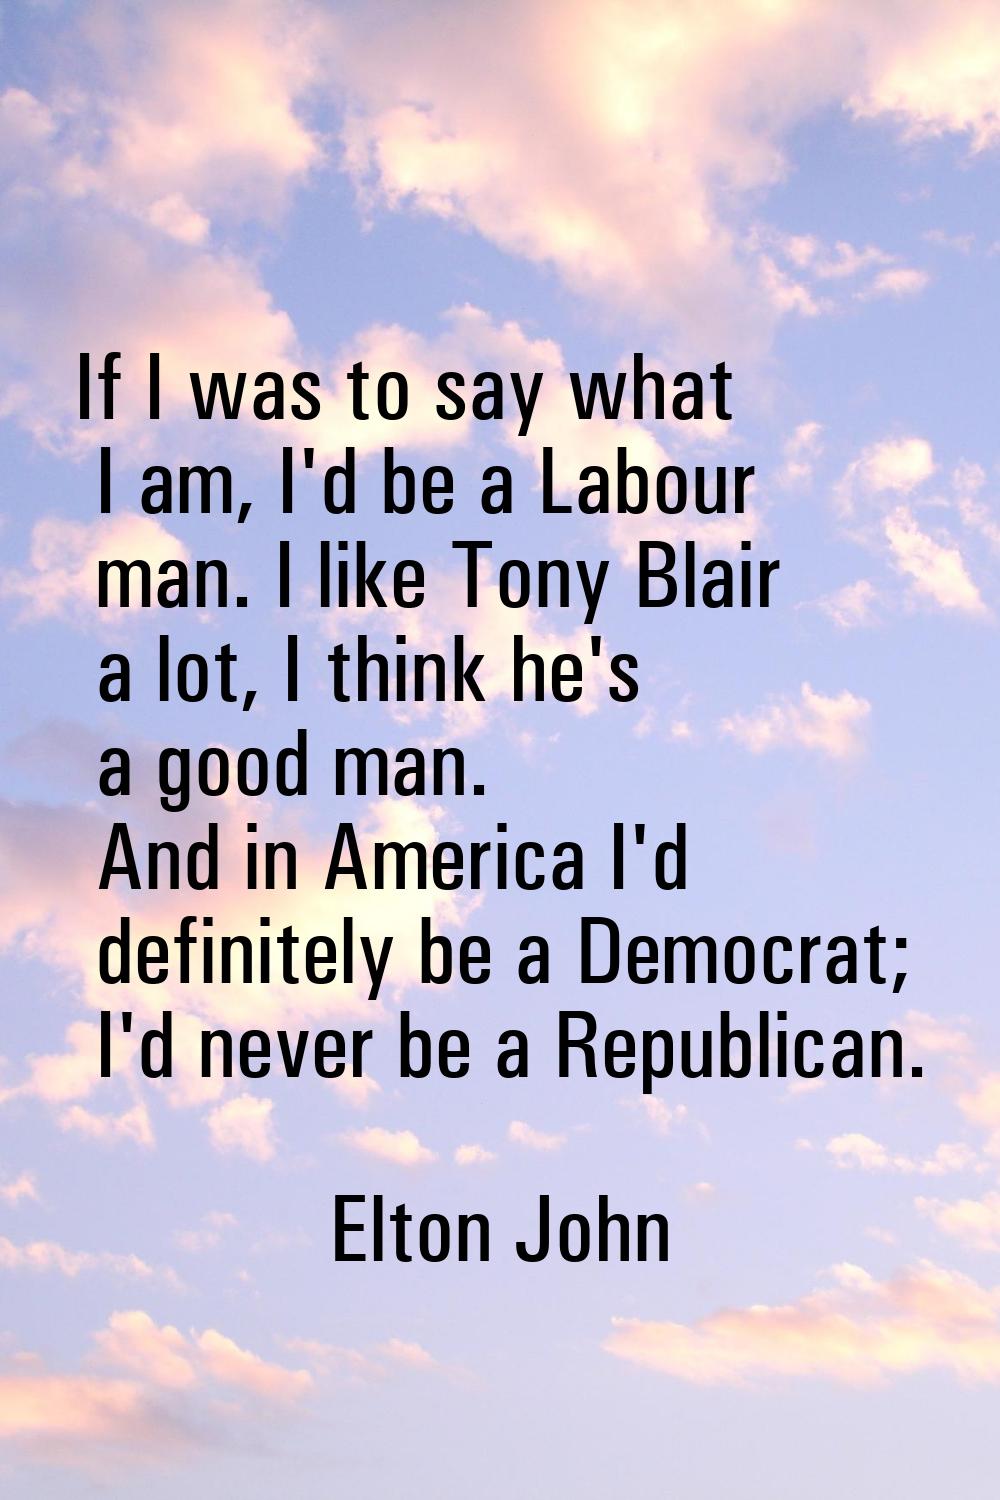 If I was to say what I am, I'd be a Labour man. I like Tony Blair a lot, I think he's a good man. A